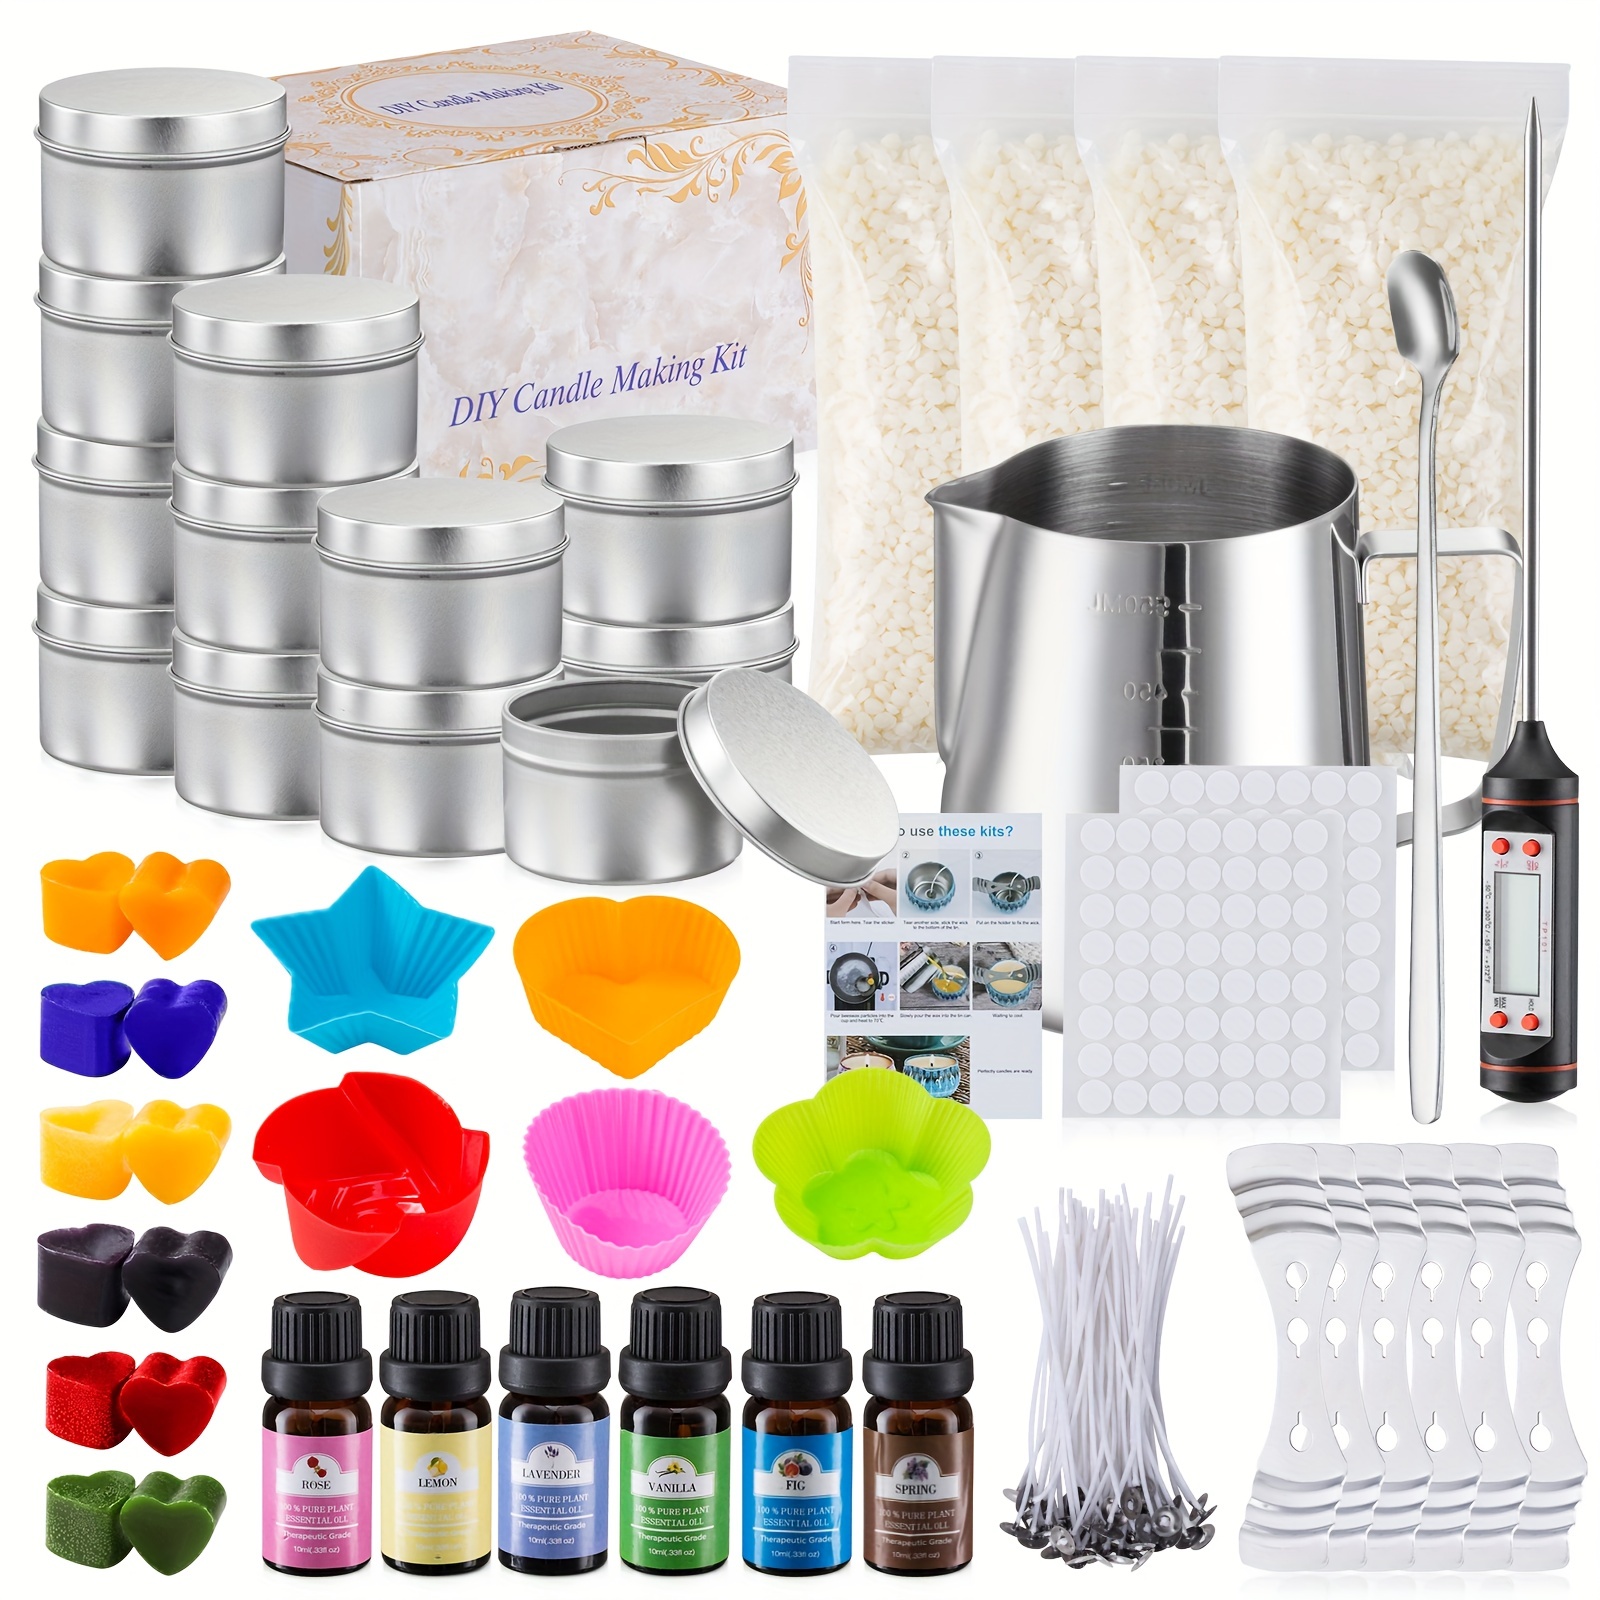 Kit completo de fabricación de velas, regalos para el día de San Valentín,  suministros de fabricación de velas para adultos, incluye cera de soja